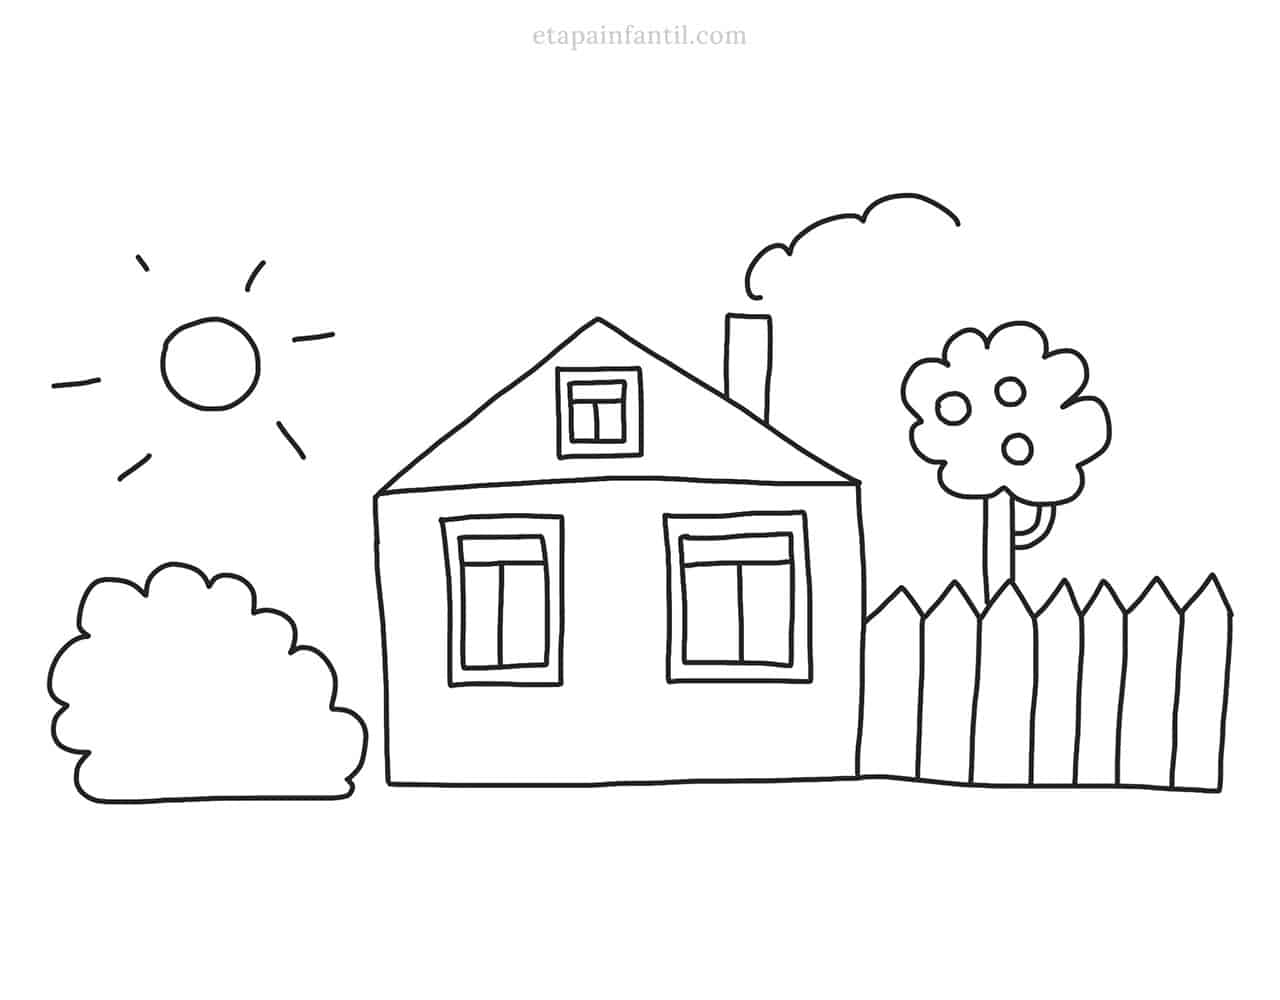 Dibujos de casas para colorear que los niños adorarán - Etapa Infantil